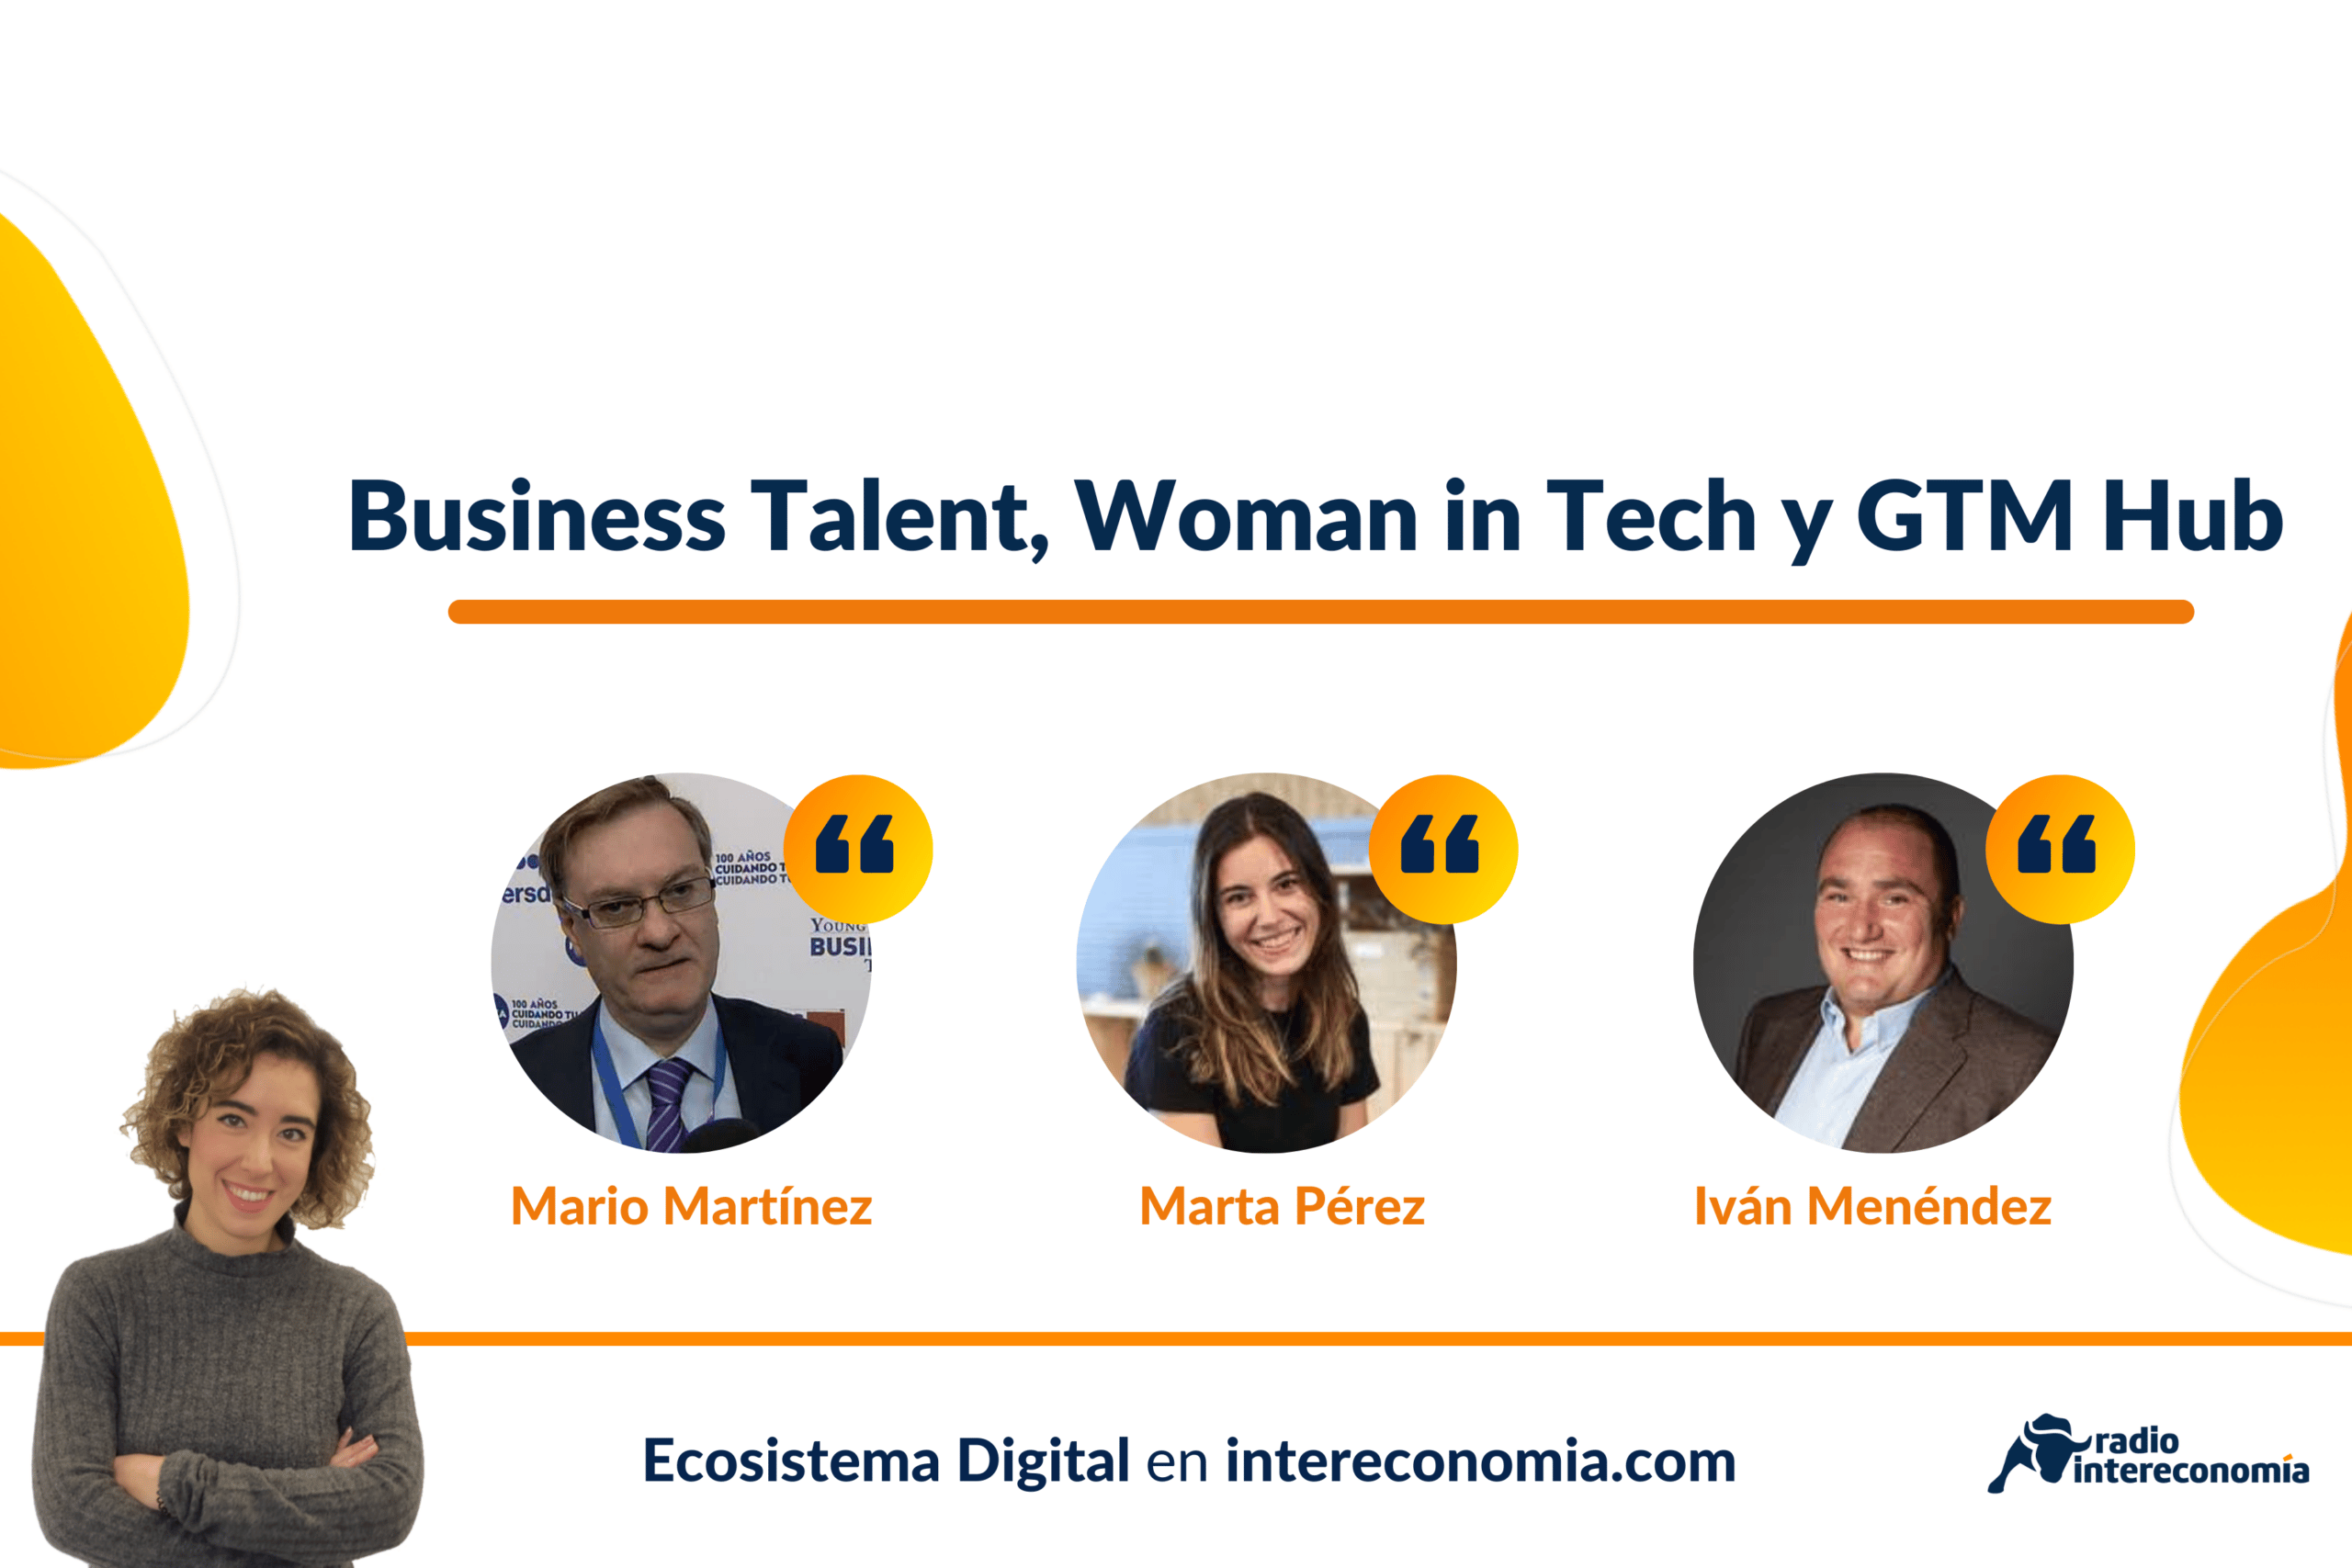 Ecosistema Digital: Business Talent, Woman in Tech y GTM Hub 29/04/2022